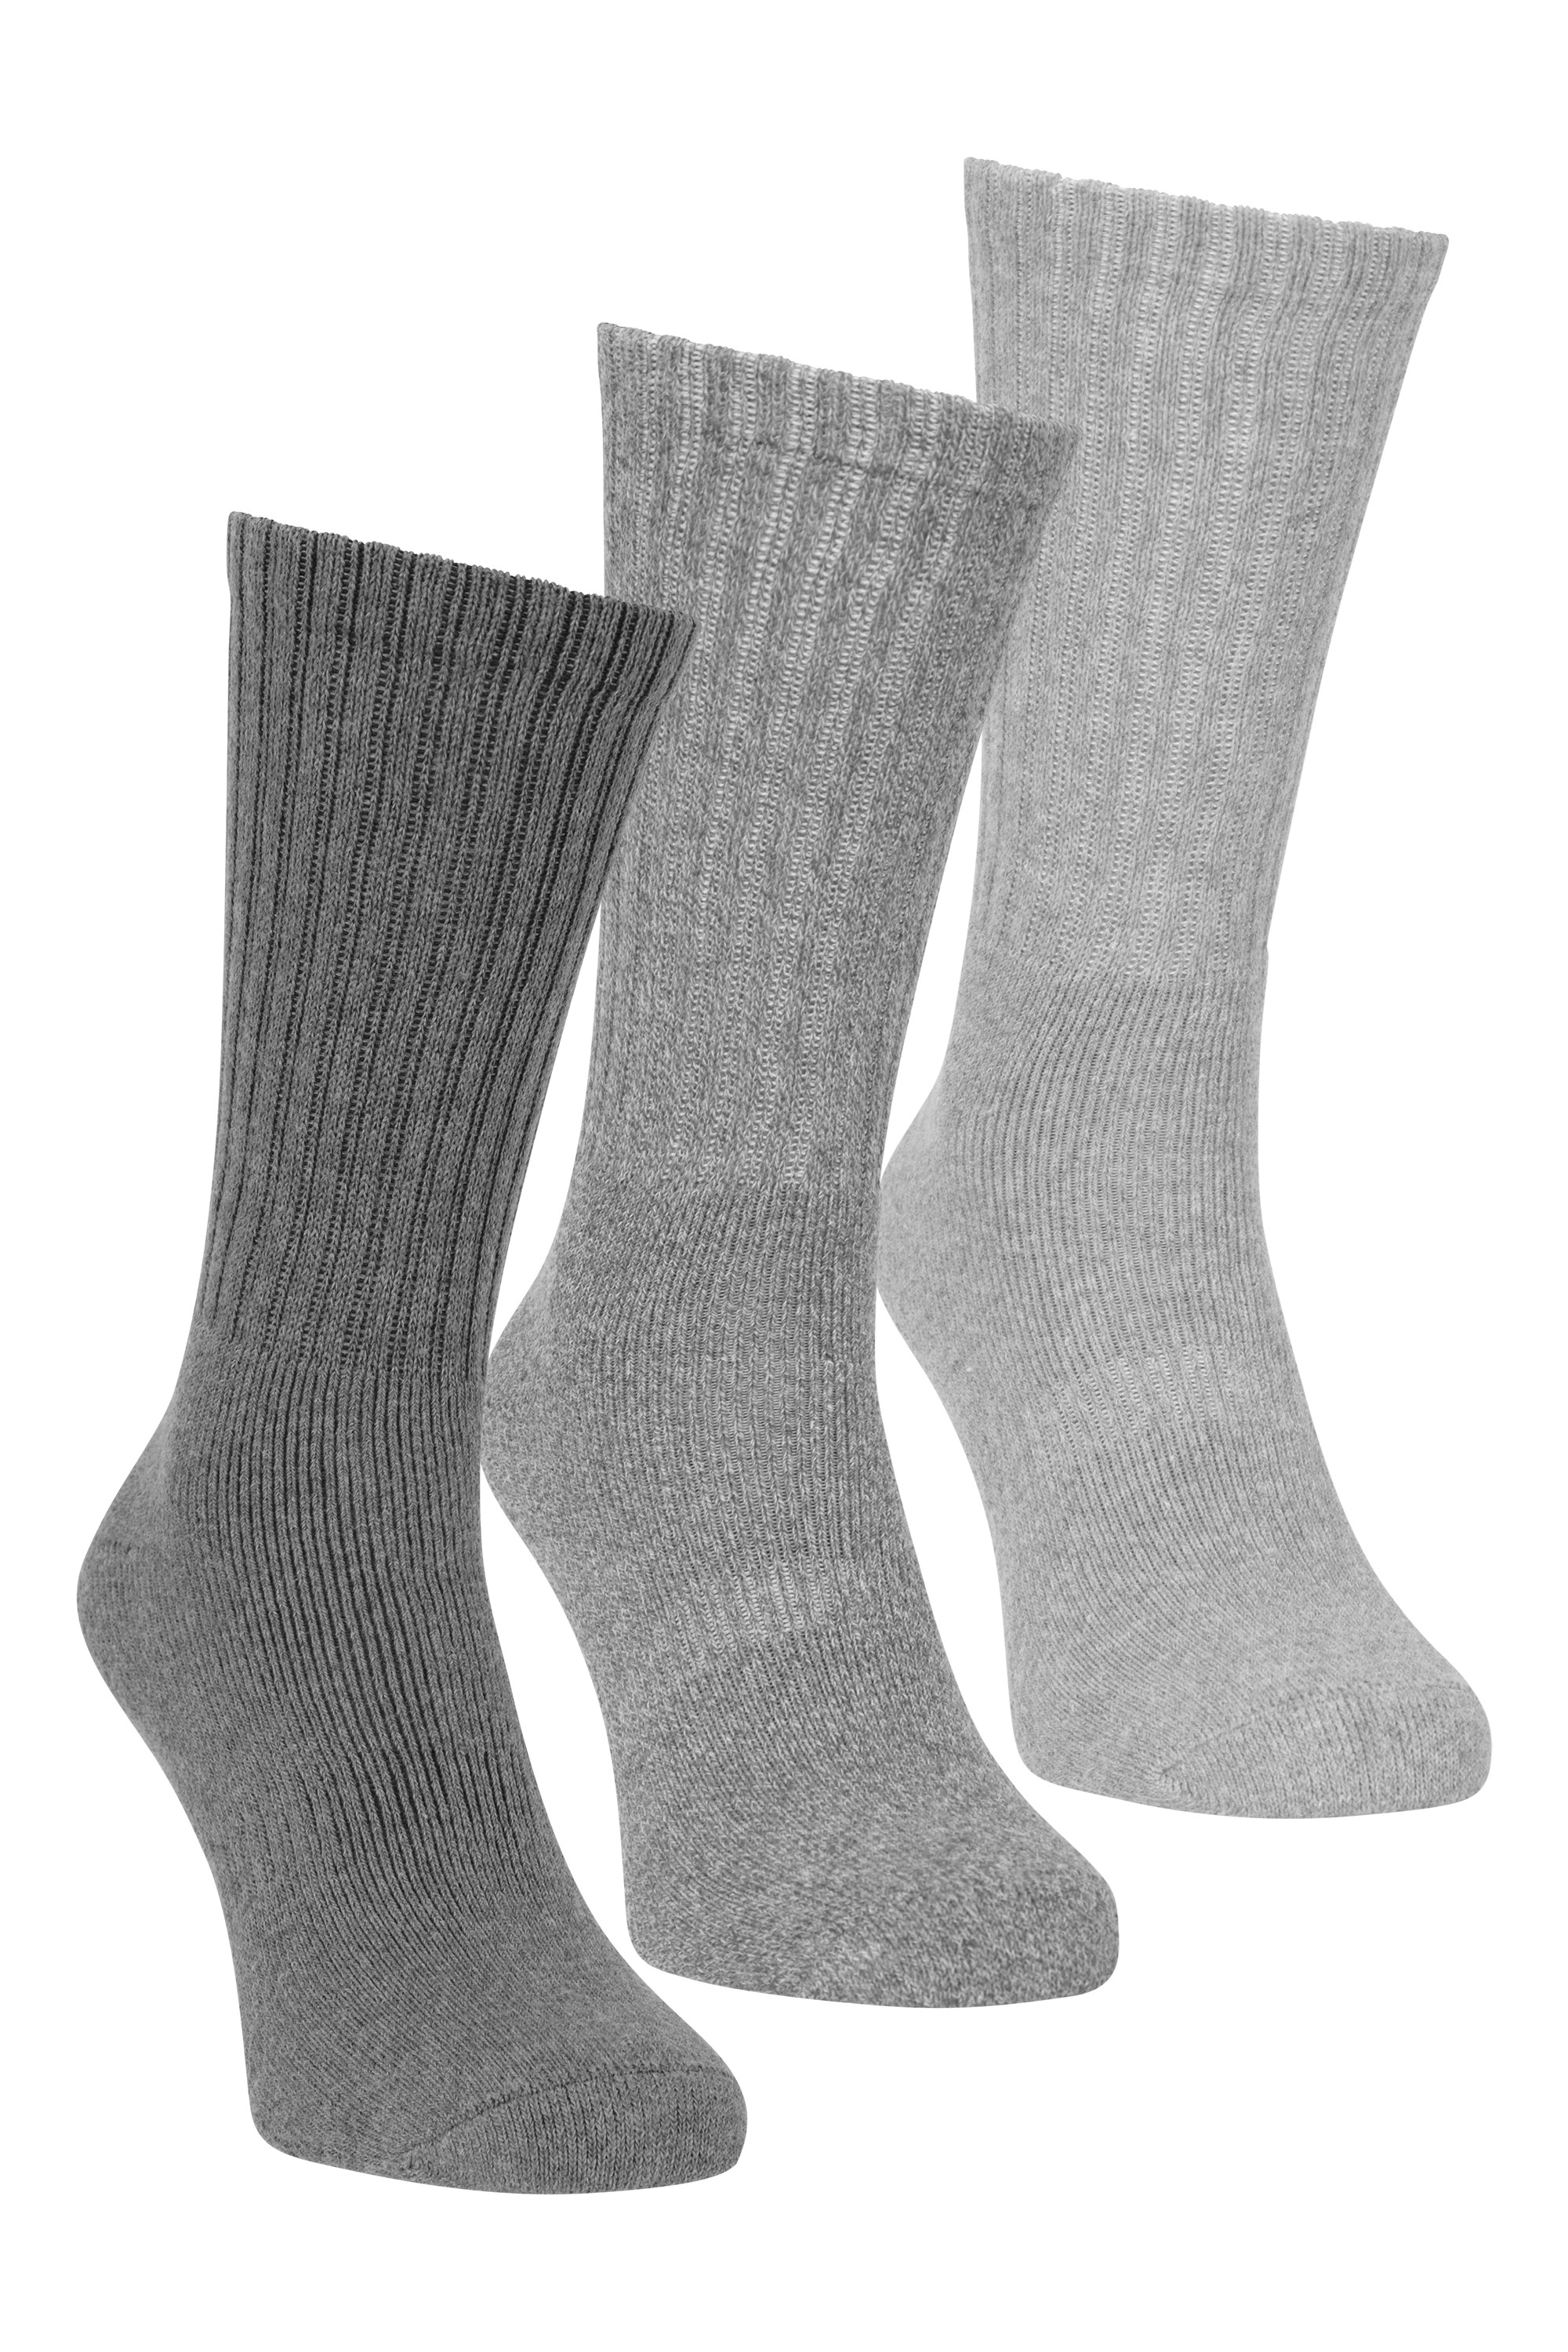 Outdoor Mens Walking Socks 3-pack Grey